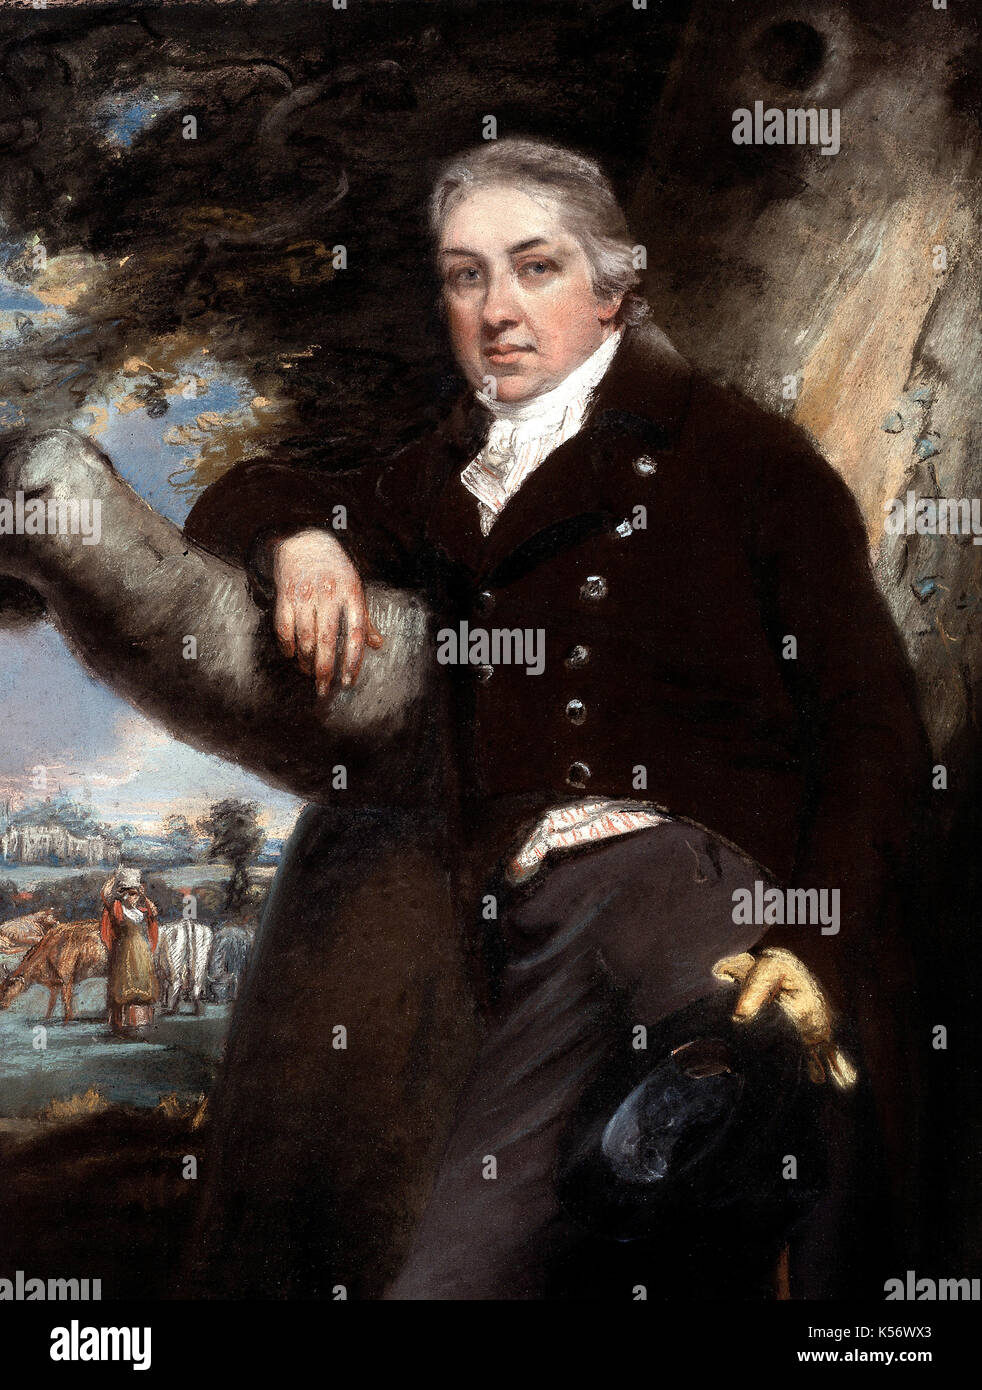 Edward Jenner, frs (/ˈdʒɛnər/; 17 maggio 1749 - 26 gennaio 1823) era un medico inglese e scienziato che è stato il pioniere del vaiolo vaccino, il mondo il primo vaccino Edward Jenner. pastel da John raphael smith. Edward Jenner pionneered la vaccinazione contro il vaiolo usando il vaccino cowpox. pastel xviii secolo da: John raphael smithpublished Foto Stock